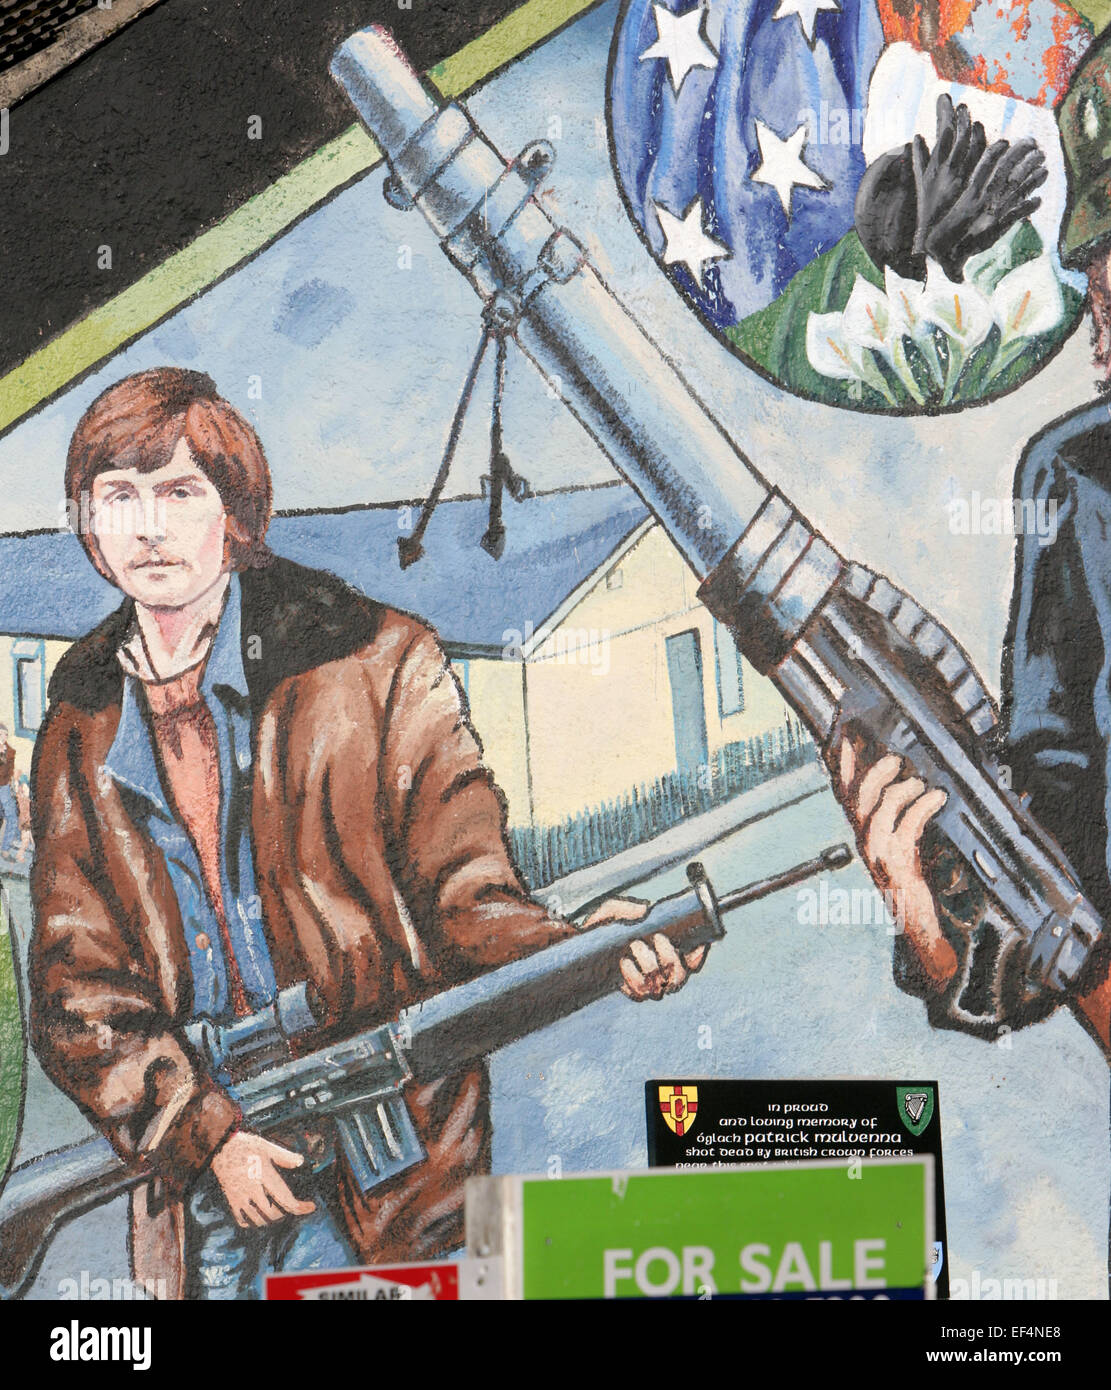 Un repubblicano irlandese murale nella parte occidentale di Belfast il giorno gli IRP ha rilasciato una dichiarazione a conferma del fatto che il INLA aveva disposto delle sue armi durante una conferenza stampa a Belfast, lunedì, Feb 8th, 2010. La INLA, il cui assassinio vittime incluso Tory MP Airey Neave, si crede di aver disposto del suo arsenale nelle ultime settimane. Un piccolo gruppo di spietata che ha ucciso più di 120 persone, ha annunciato nel mese di ottobre che intende perseguire i suoi obiettivi esclusivamente con mezzi pacifici. Il repubblicano corpo paramilitare è creduto di essere stato responsabile di 111 omicidi dalla sua formazione nel 1975 fino al cessate il fuoco mi Foto Stock